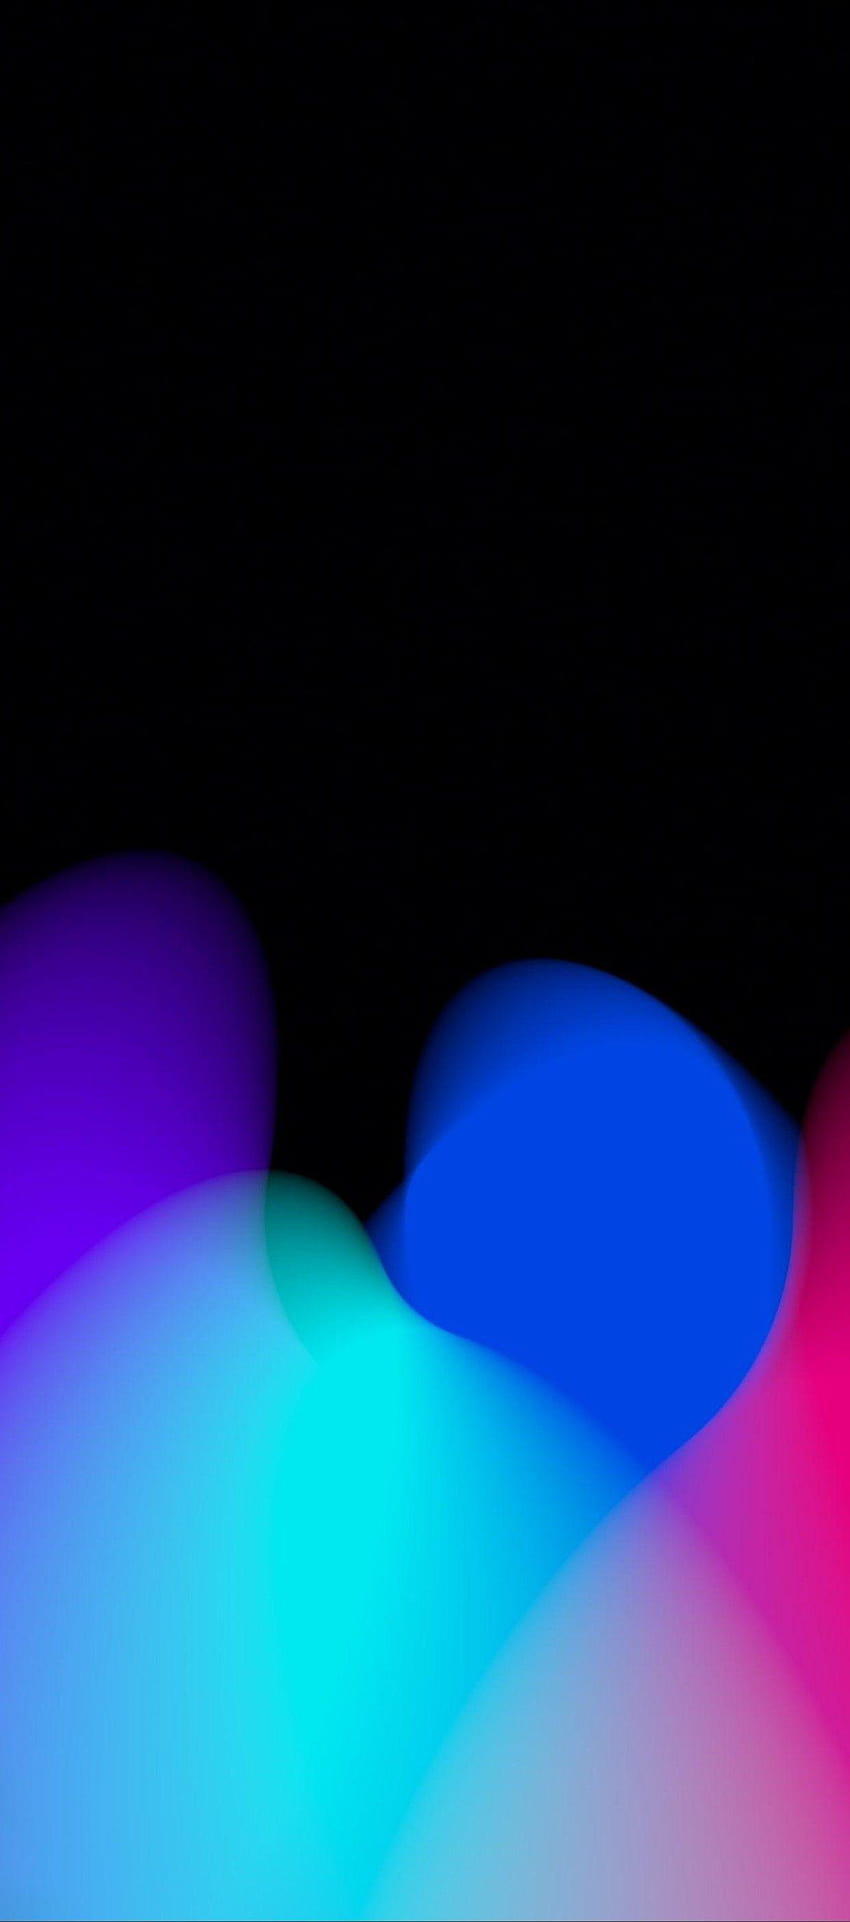 iOS 11, iPhone X, negro, rojo, morado, azul, limpio, simple, abstracto, iluminación azul y roja fondo de pantalla del teléfono